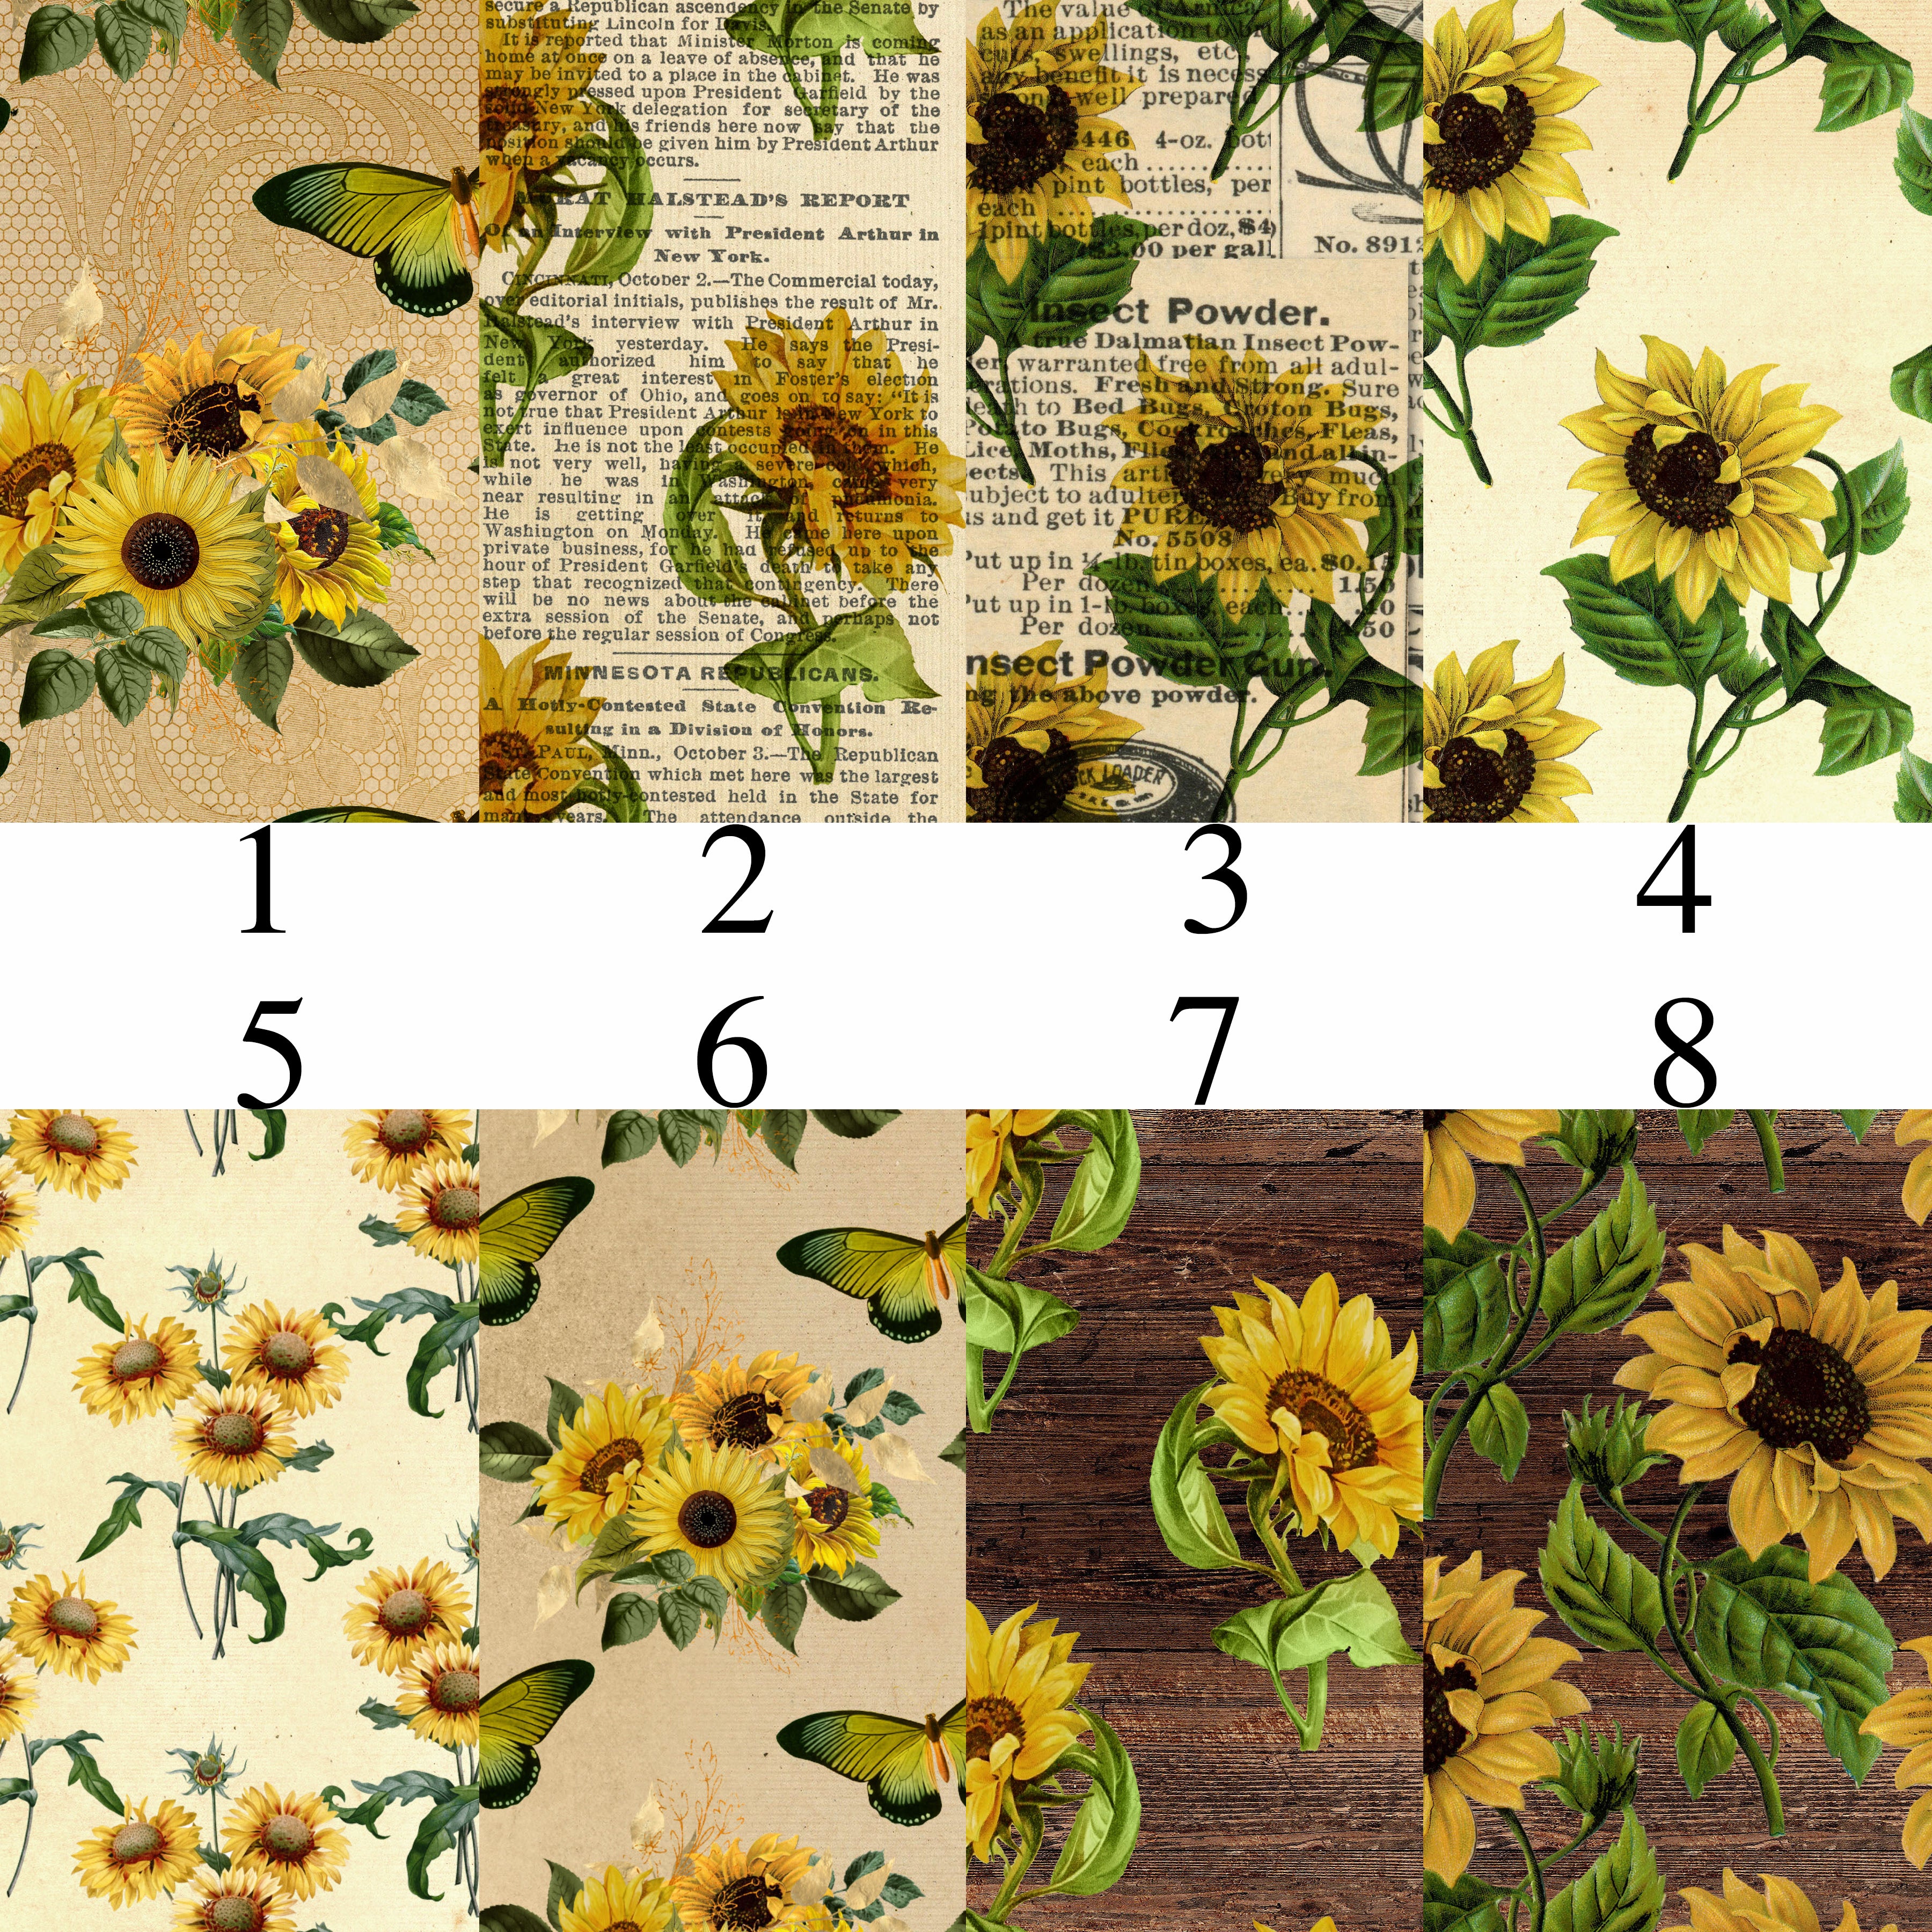 Sunflower HTV Vinyl, Black and White Plaid Pattern Vinyl Sheet